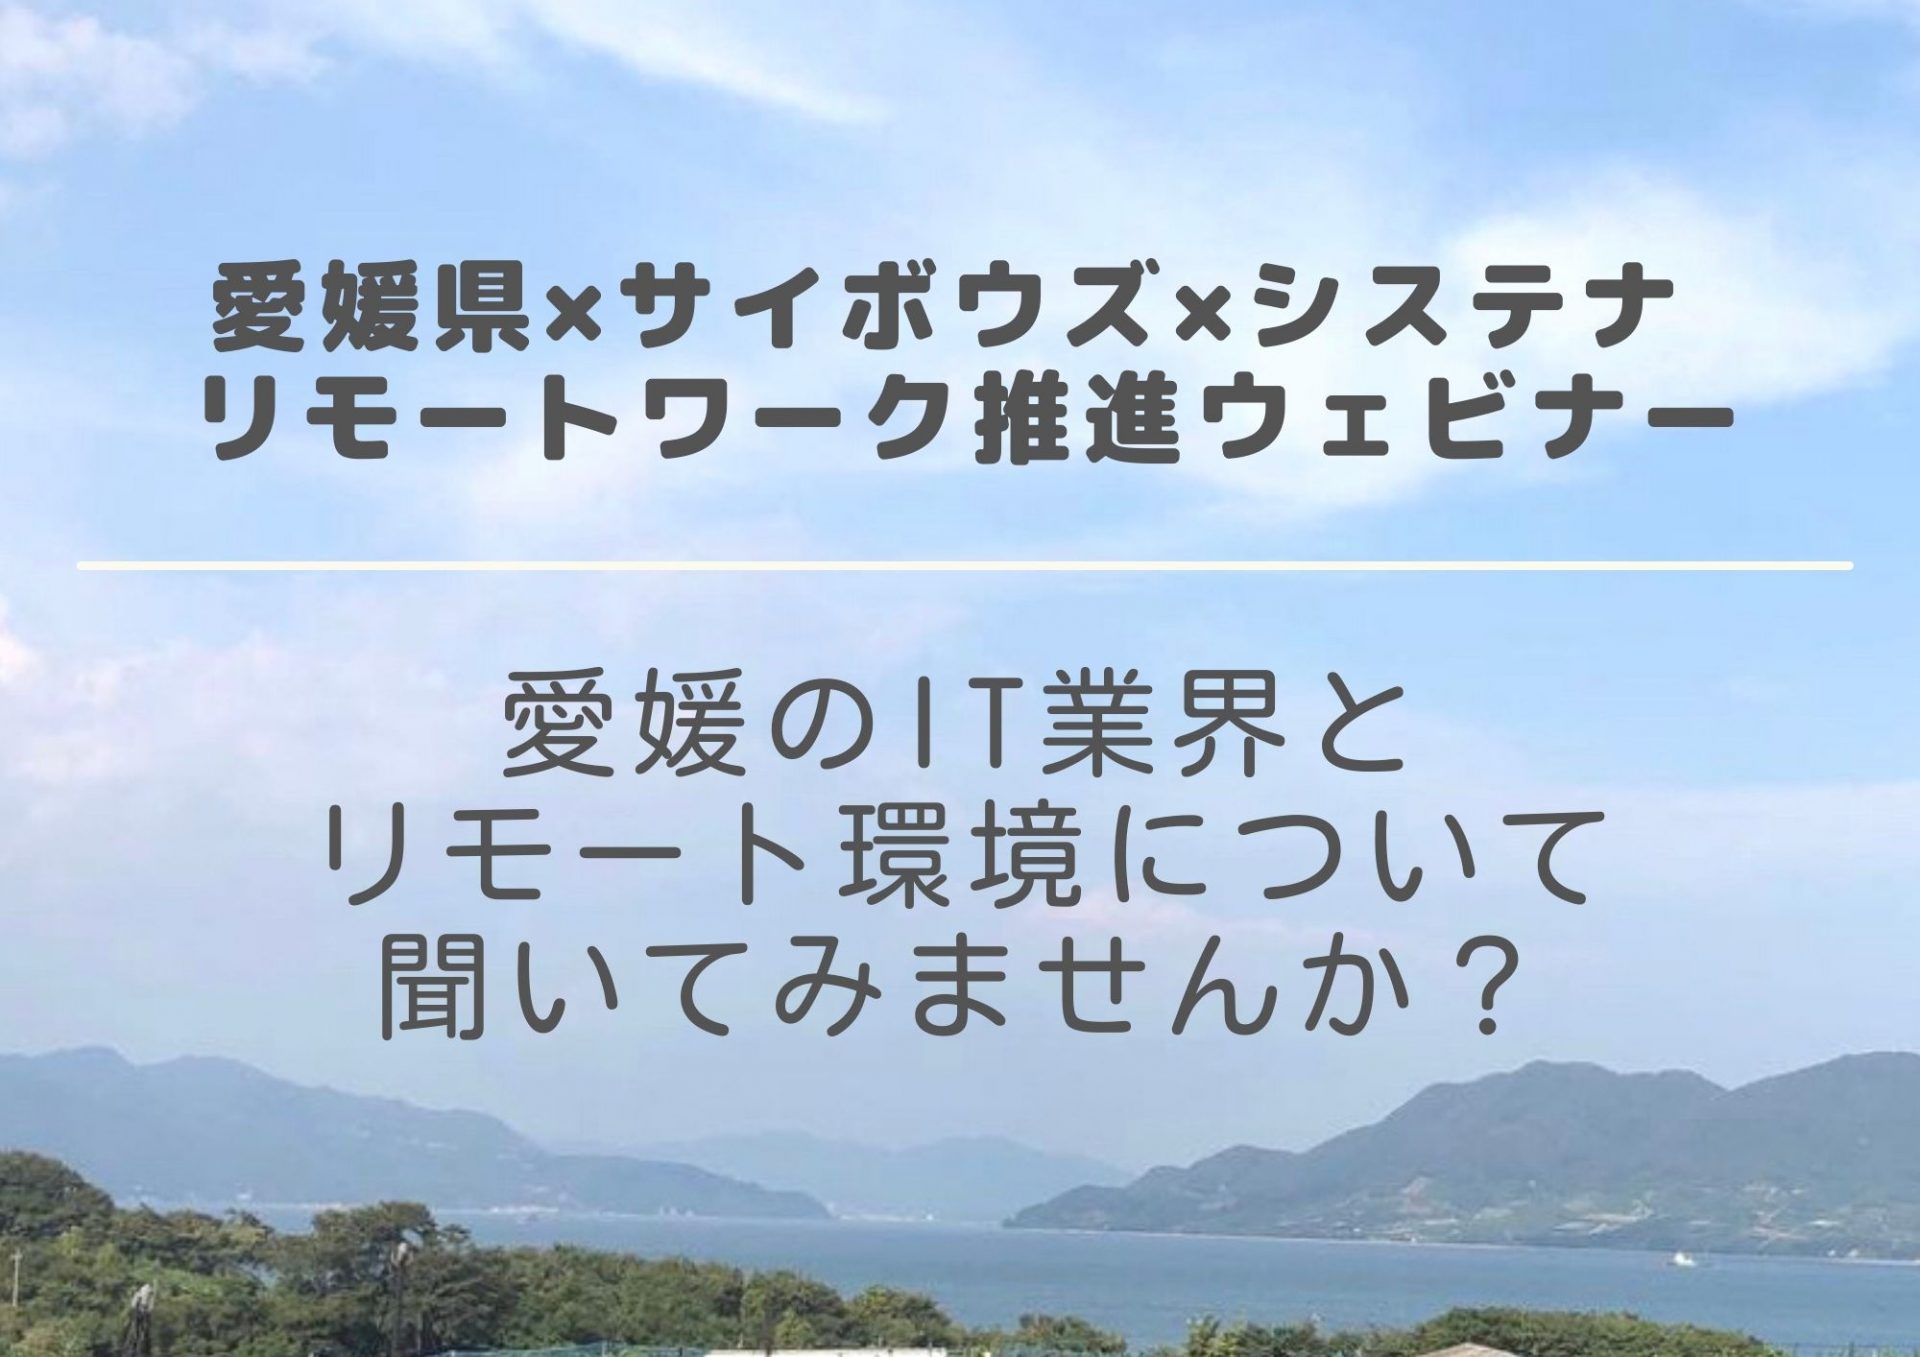 愛媛県×サイボウズ×システナ リモートワーク推進ウェビナー | 地域のトピックス